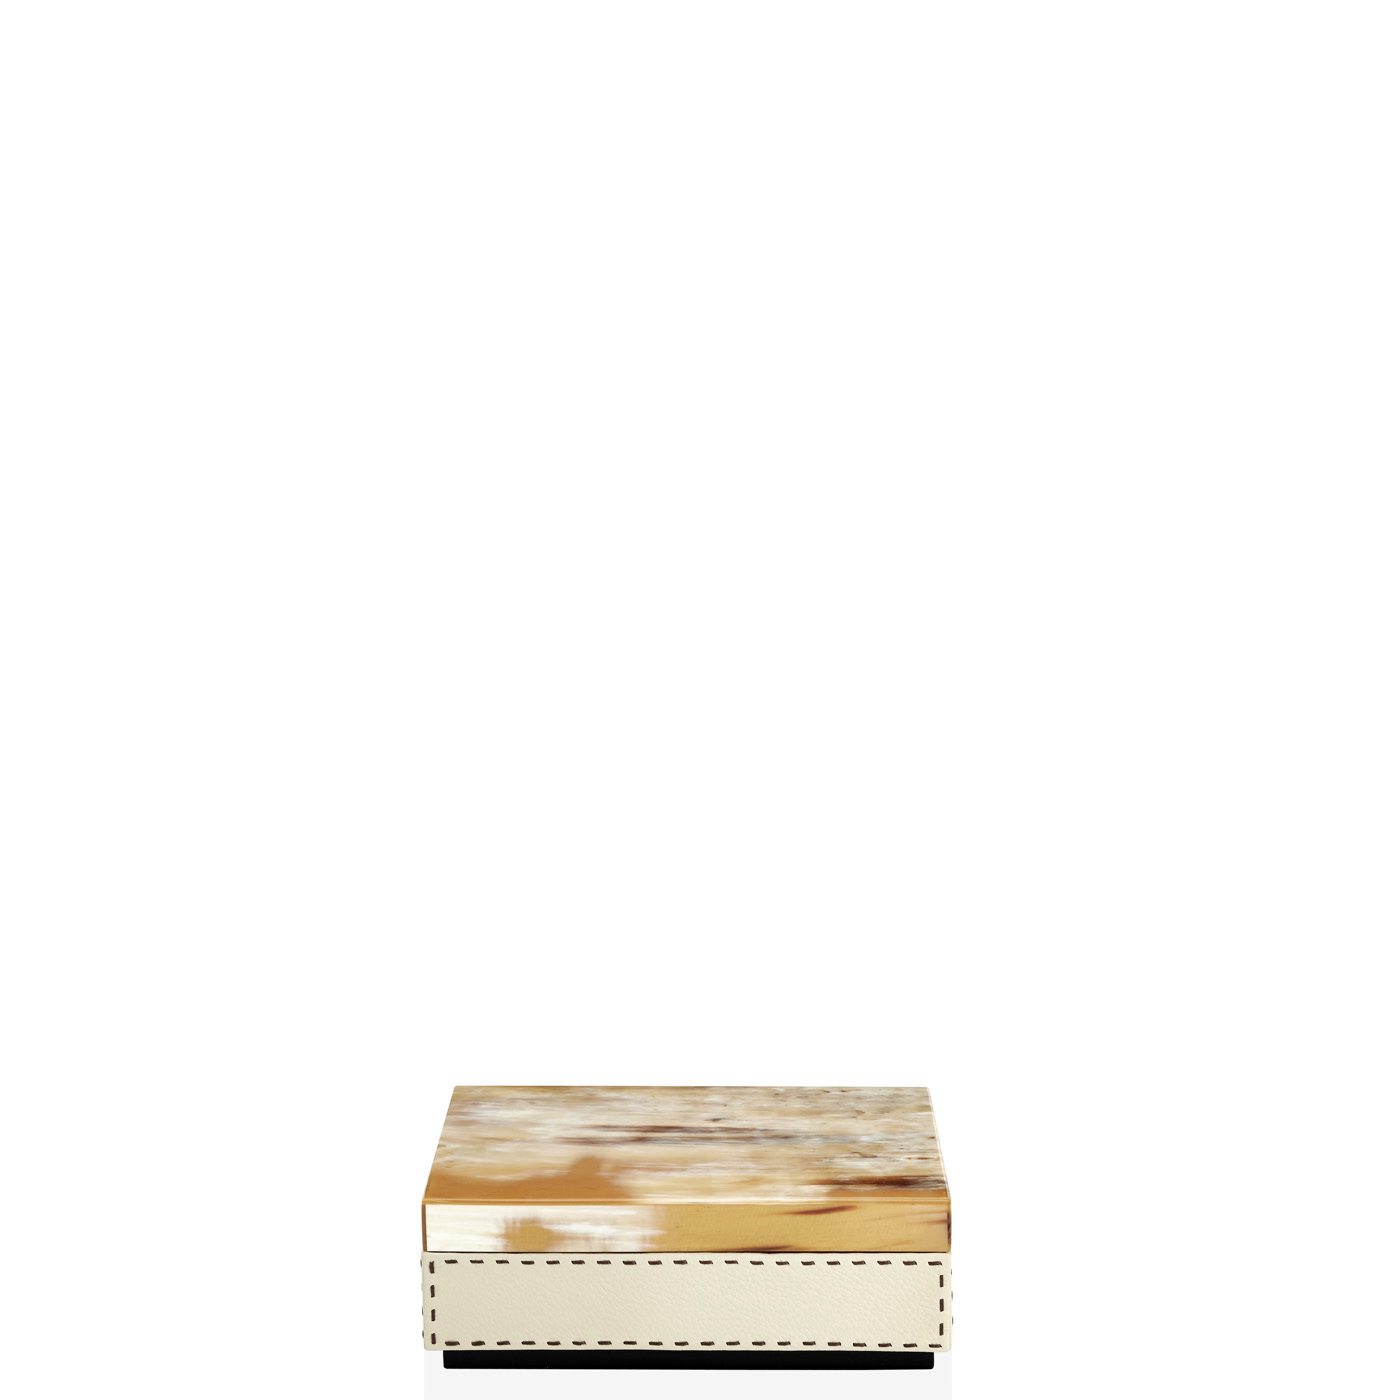 Cornici e scatole - Ottavia scatola in corno e pelle martellata Ice-cream mod. 4468 - Arcahorn